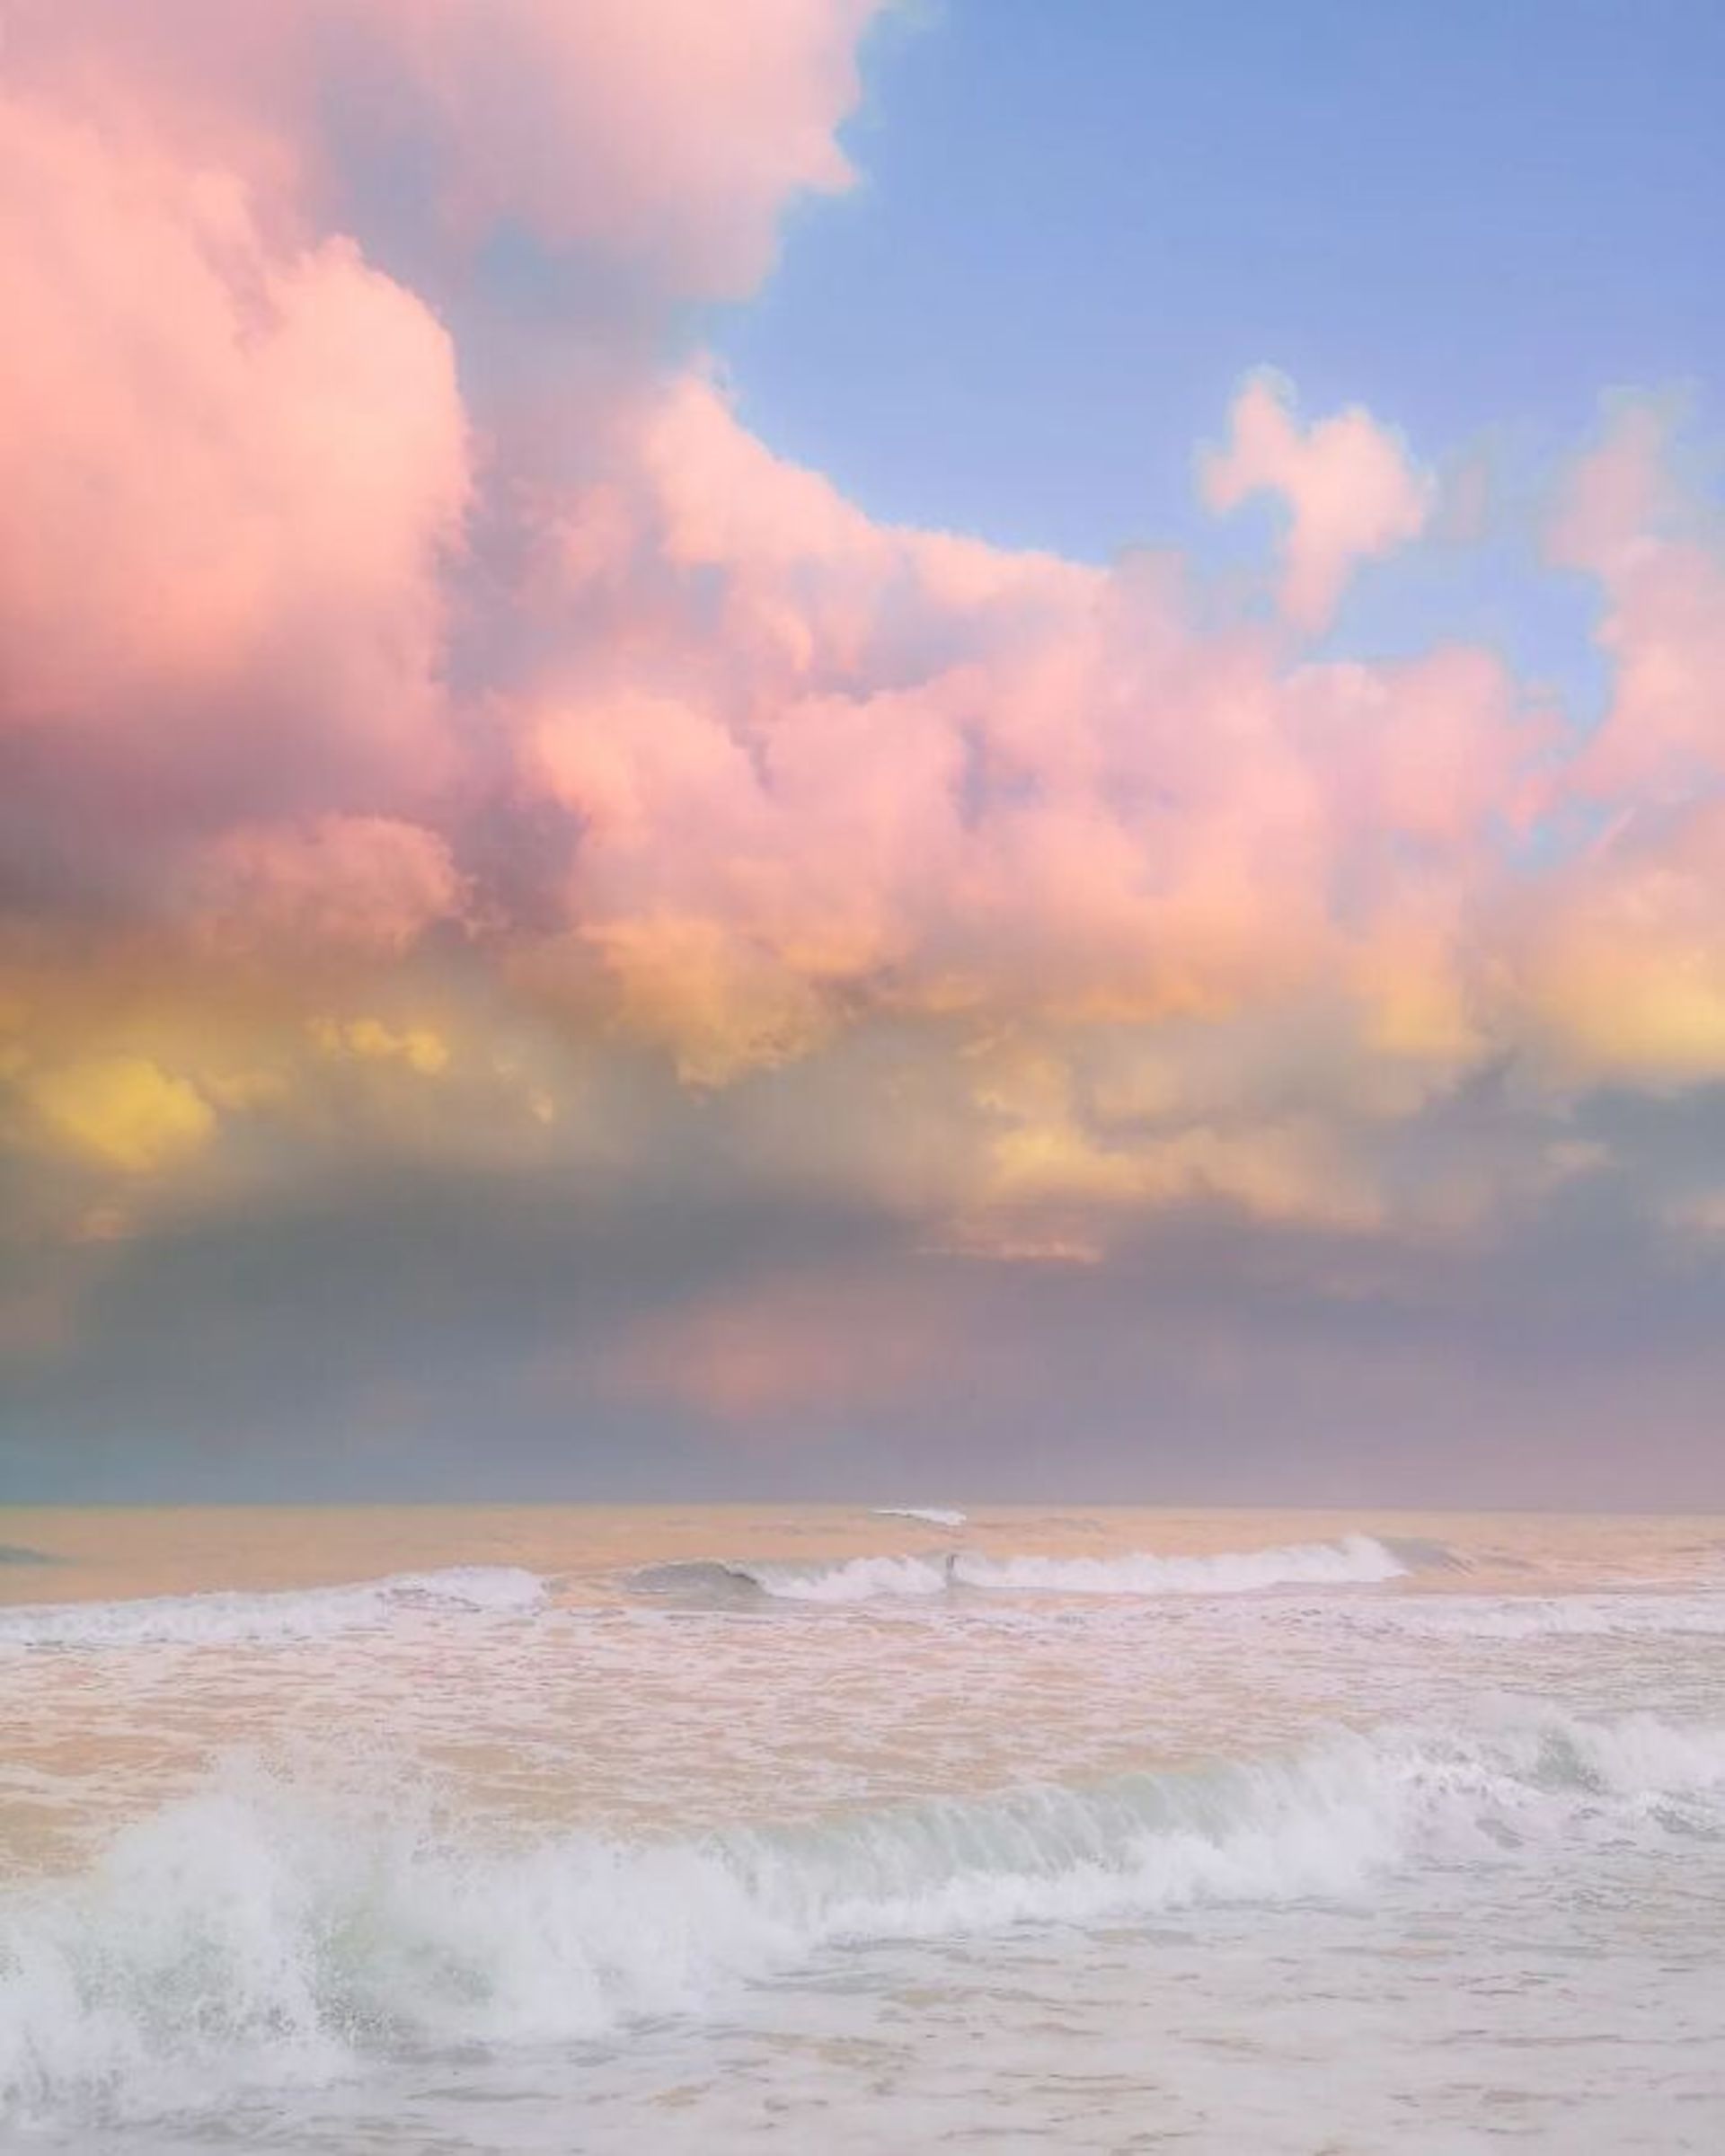 دریا و آسمان رنگ های پاستلی